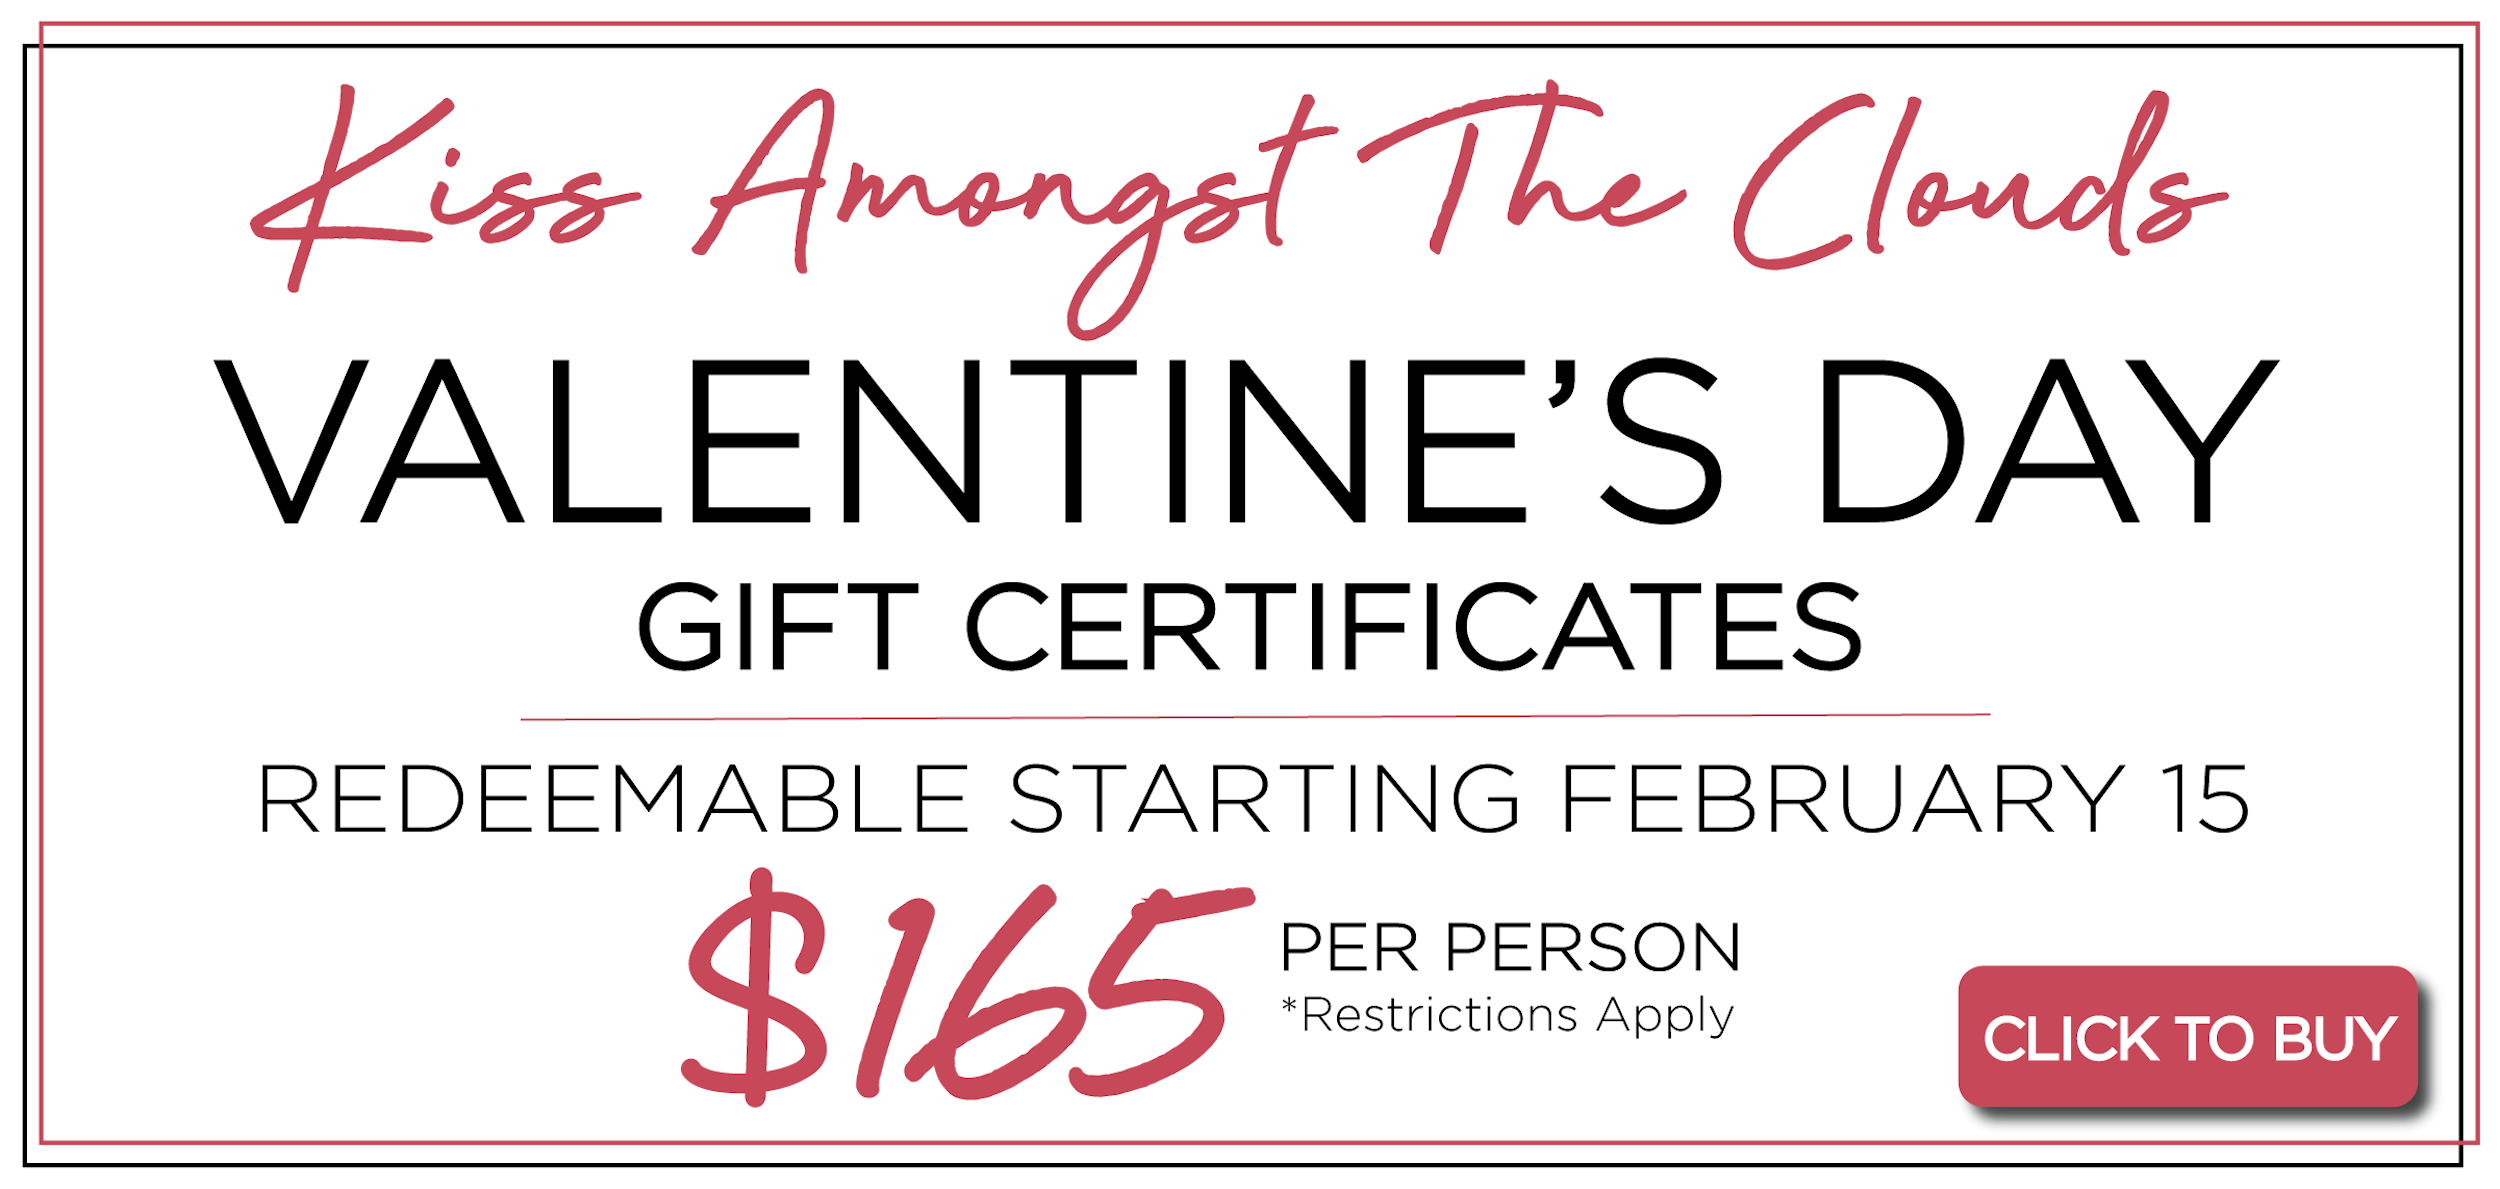 Valentine's Day Gift Certificates | $165 per person